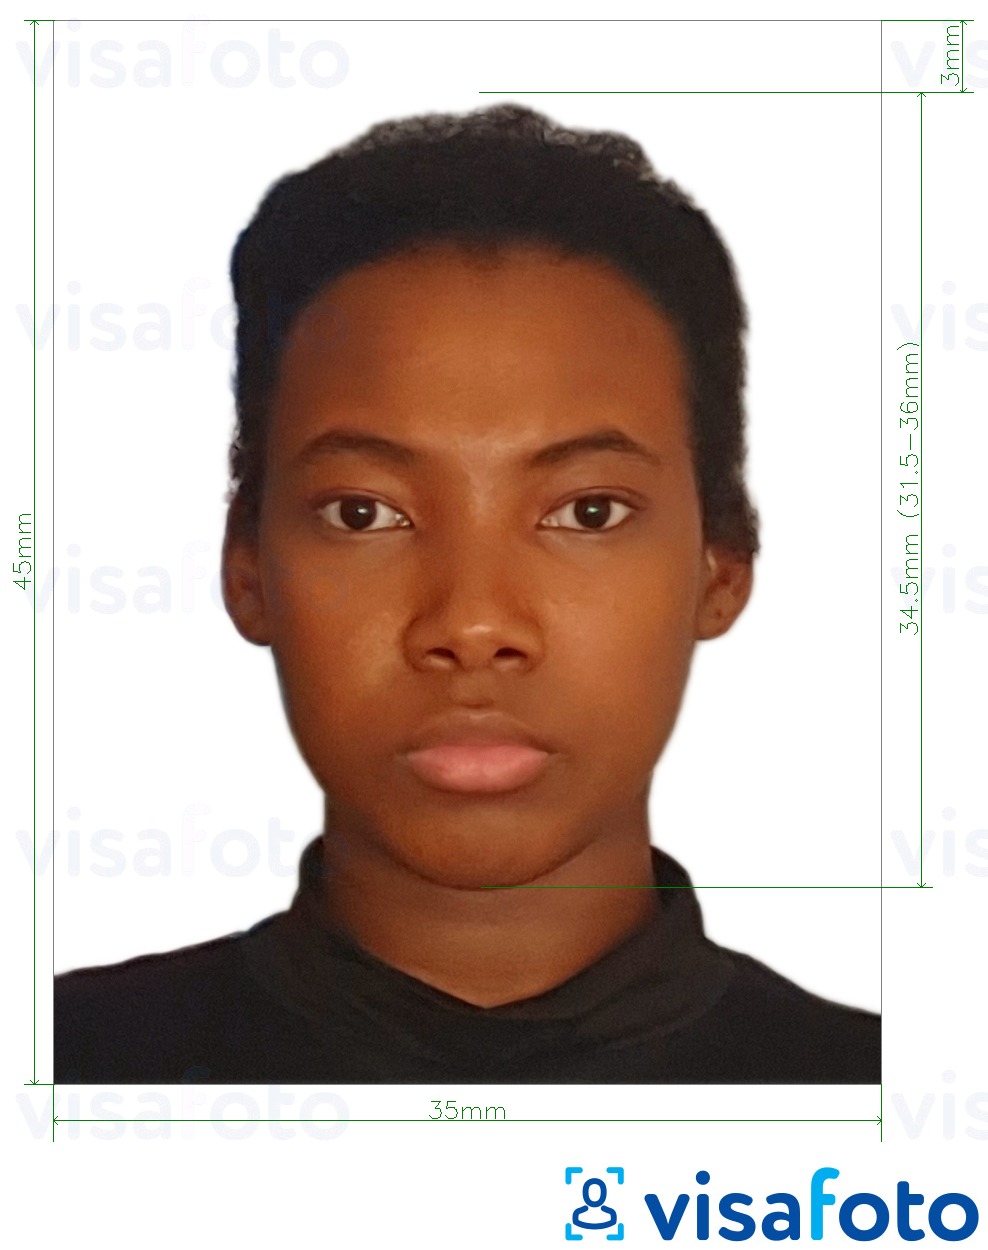 सटीक आकार विनिर्देश के साथ कांगो पासपोर्ट का लोकतांत्रिक गणराज्य 35x45 मिमी (3.5x4.5 सेमी) के लिए तस्वीर का उदाहरण